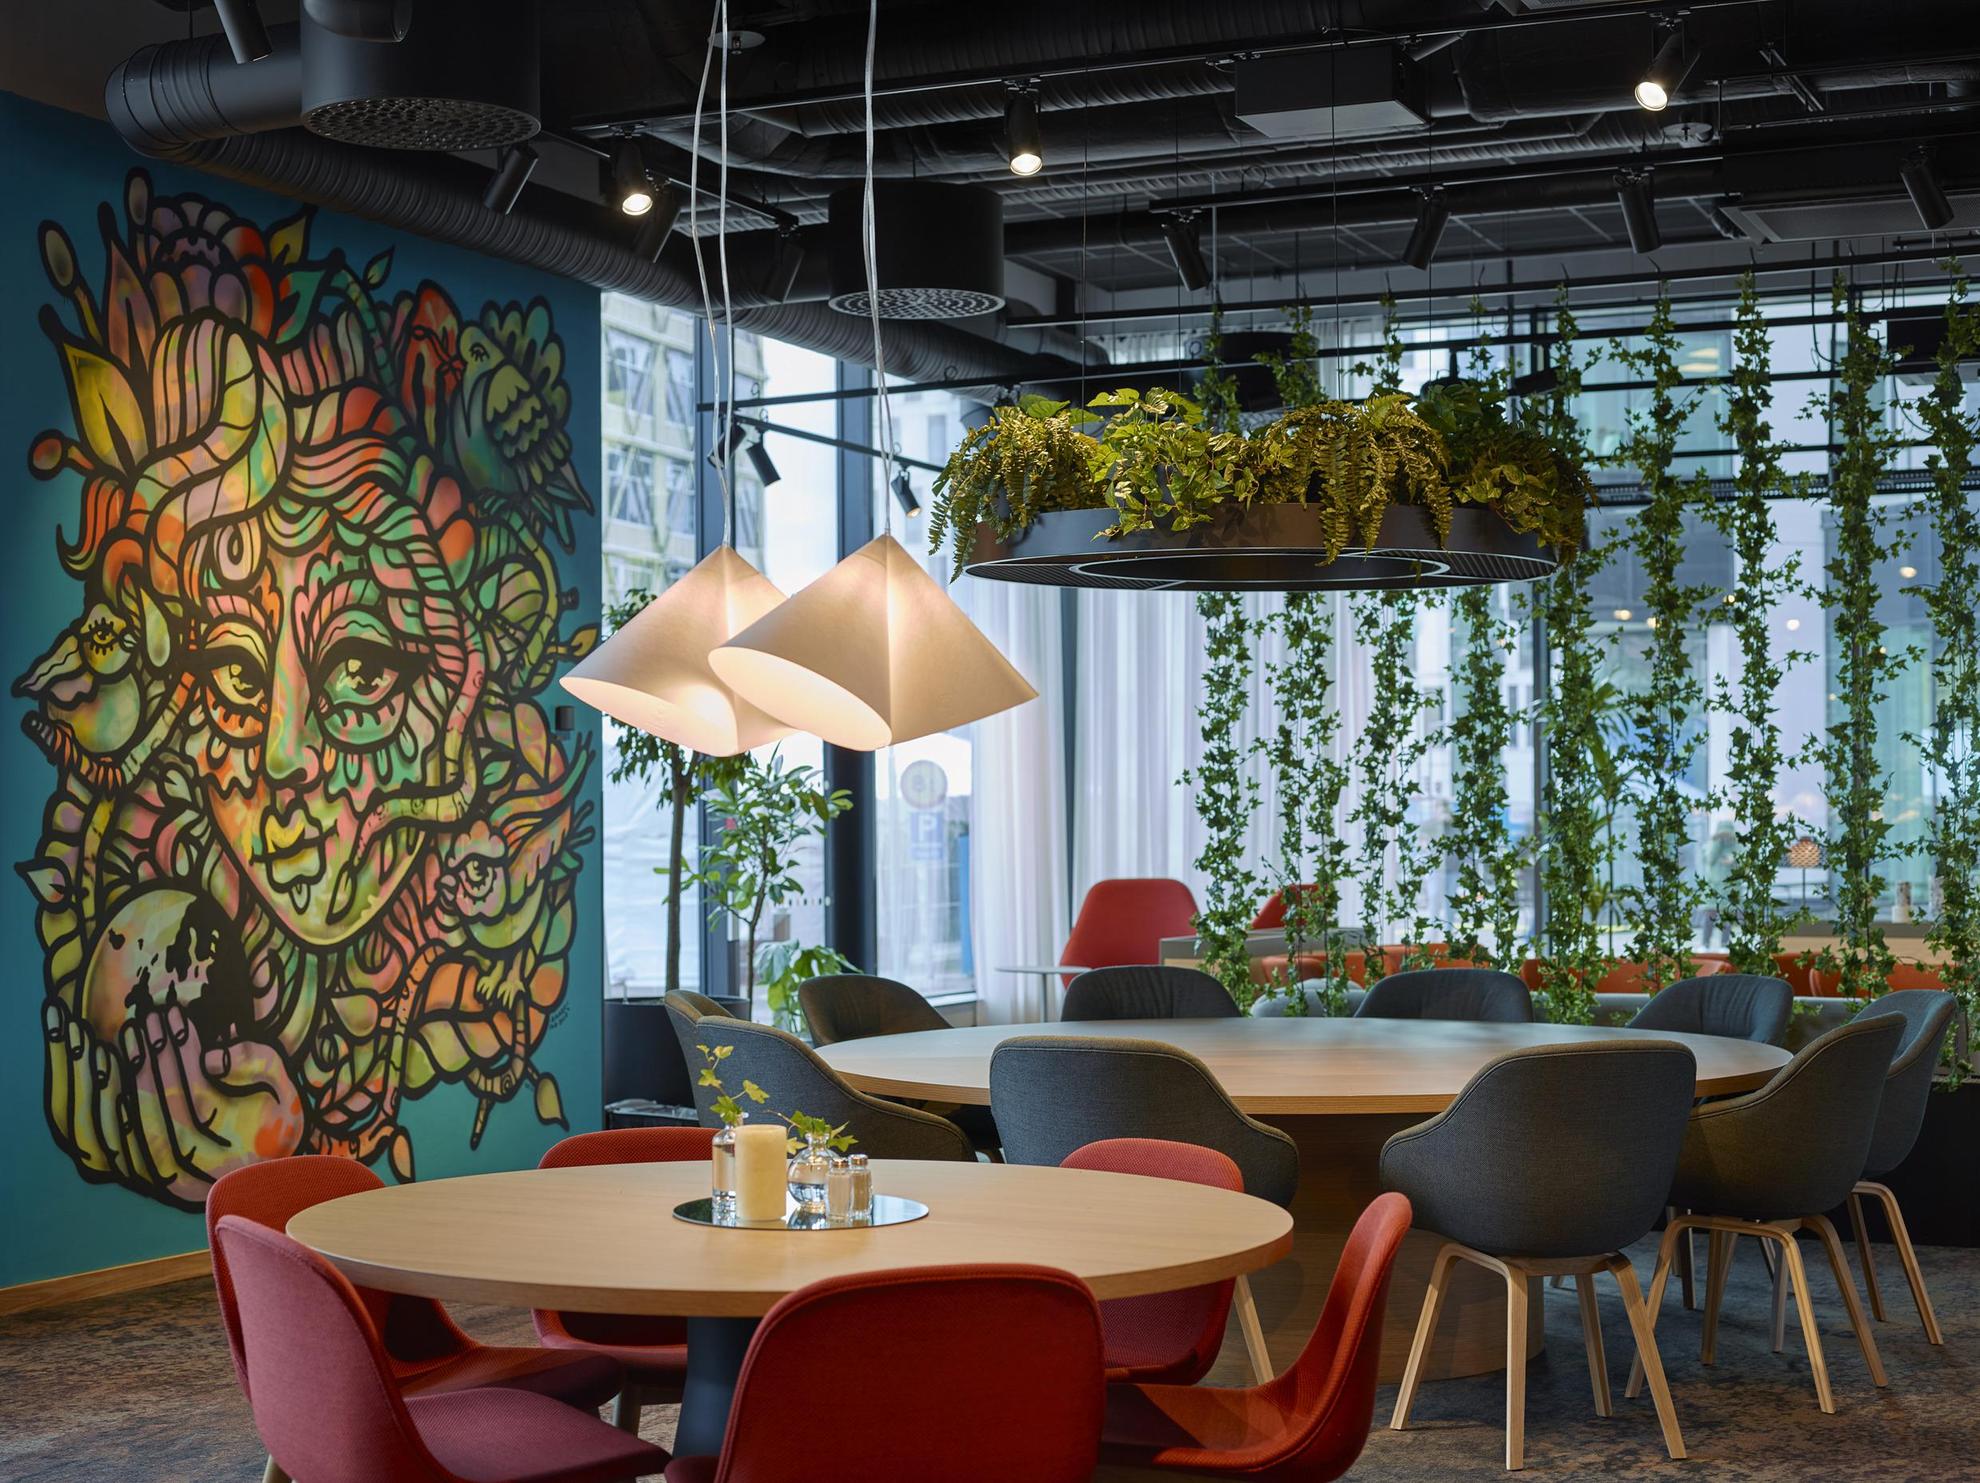 Een kamer met ronde houten tafels met rode en zwarte stoelen. Aan het plafond hangen planten en een blauwe muur is beschilderd met kunstwerken.